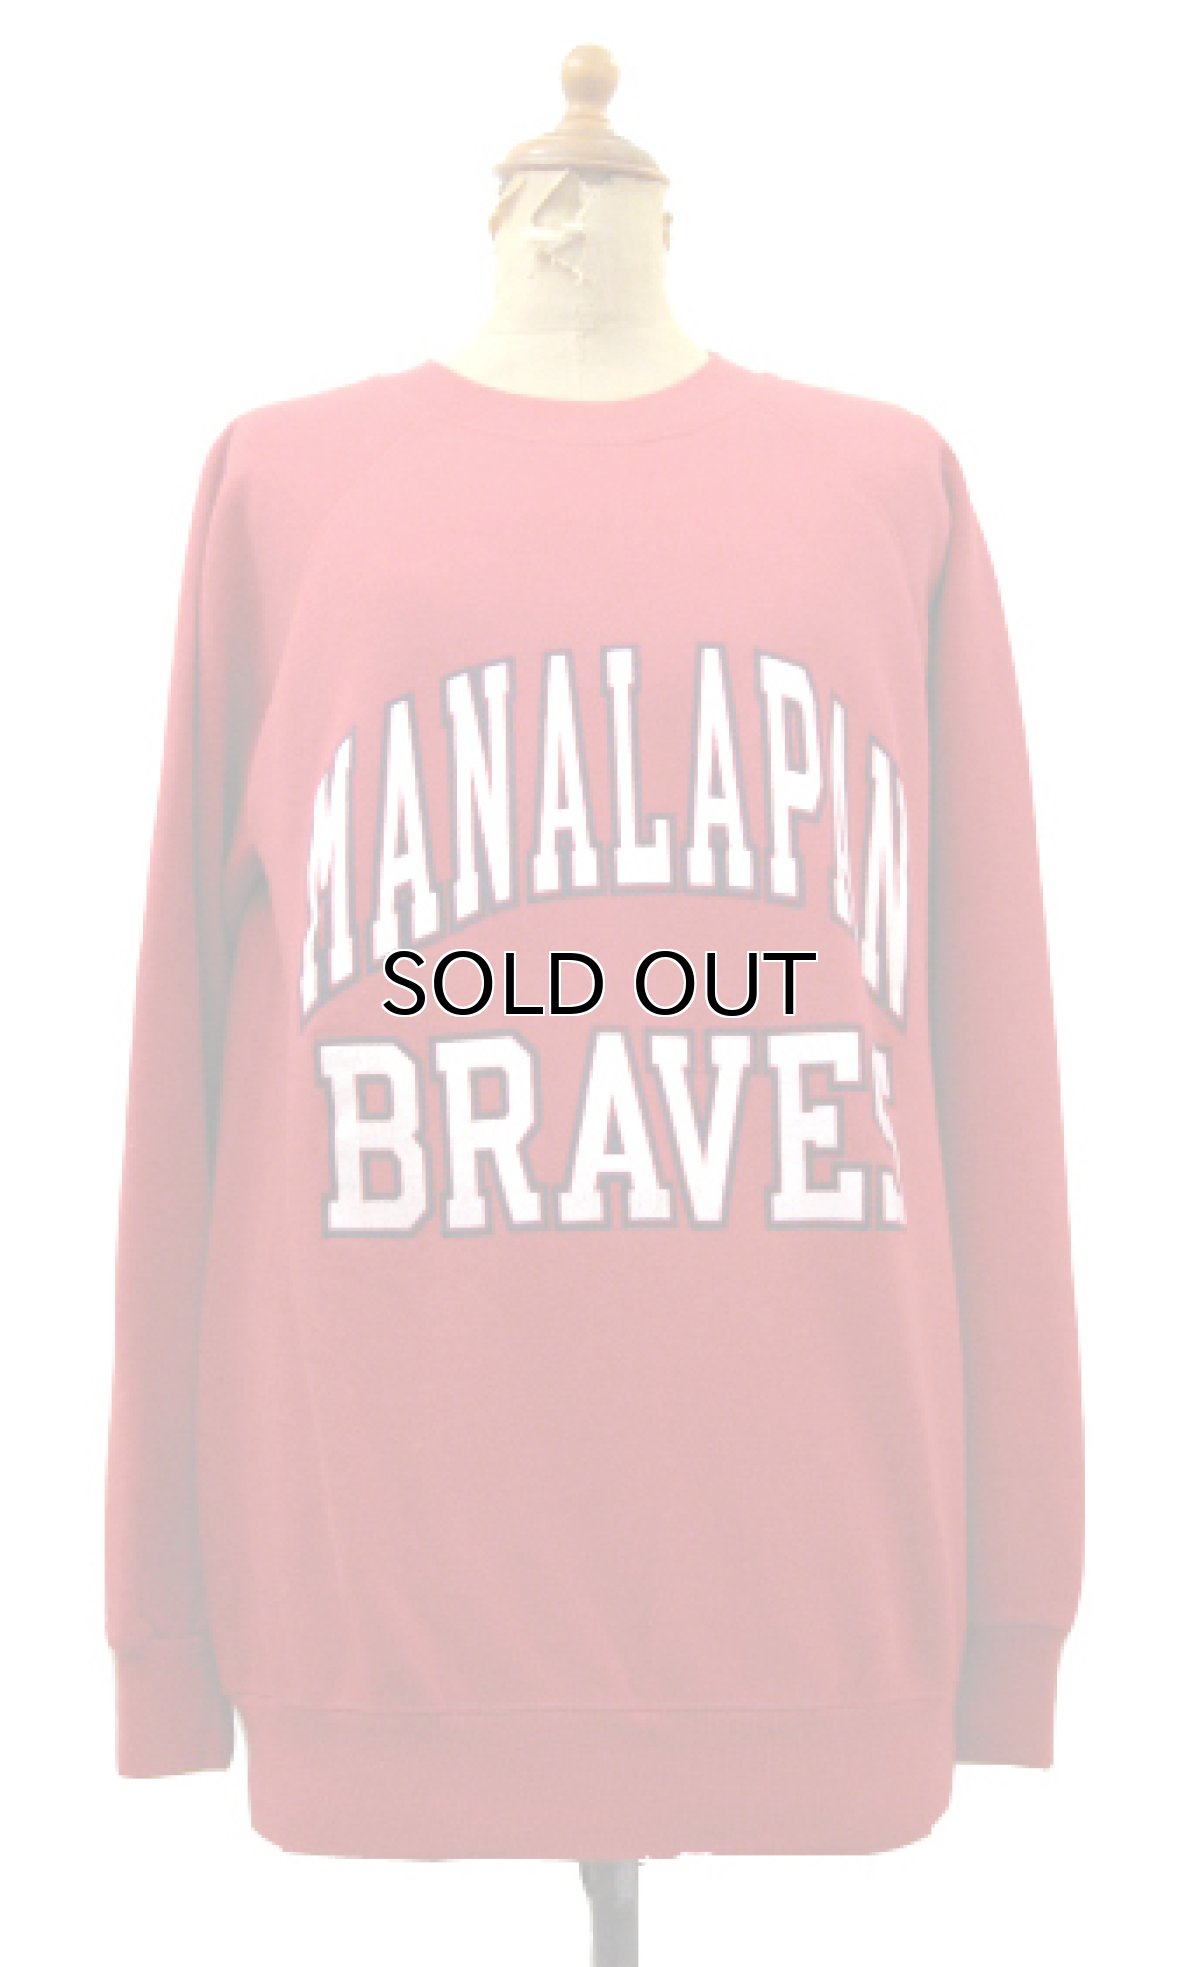 画像1: 1990's Hanes "MANALAPAN BRAVES" Sweat Shirts made in USA　RED　size S (表記 M 38-40) (1)